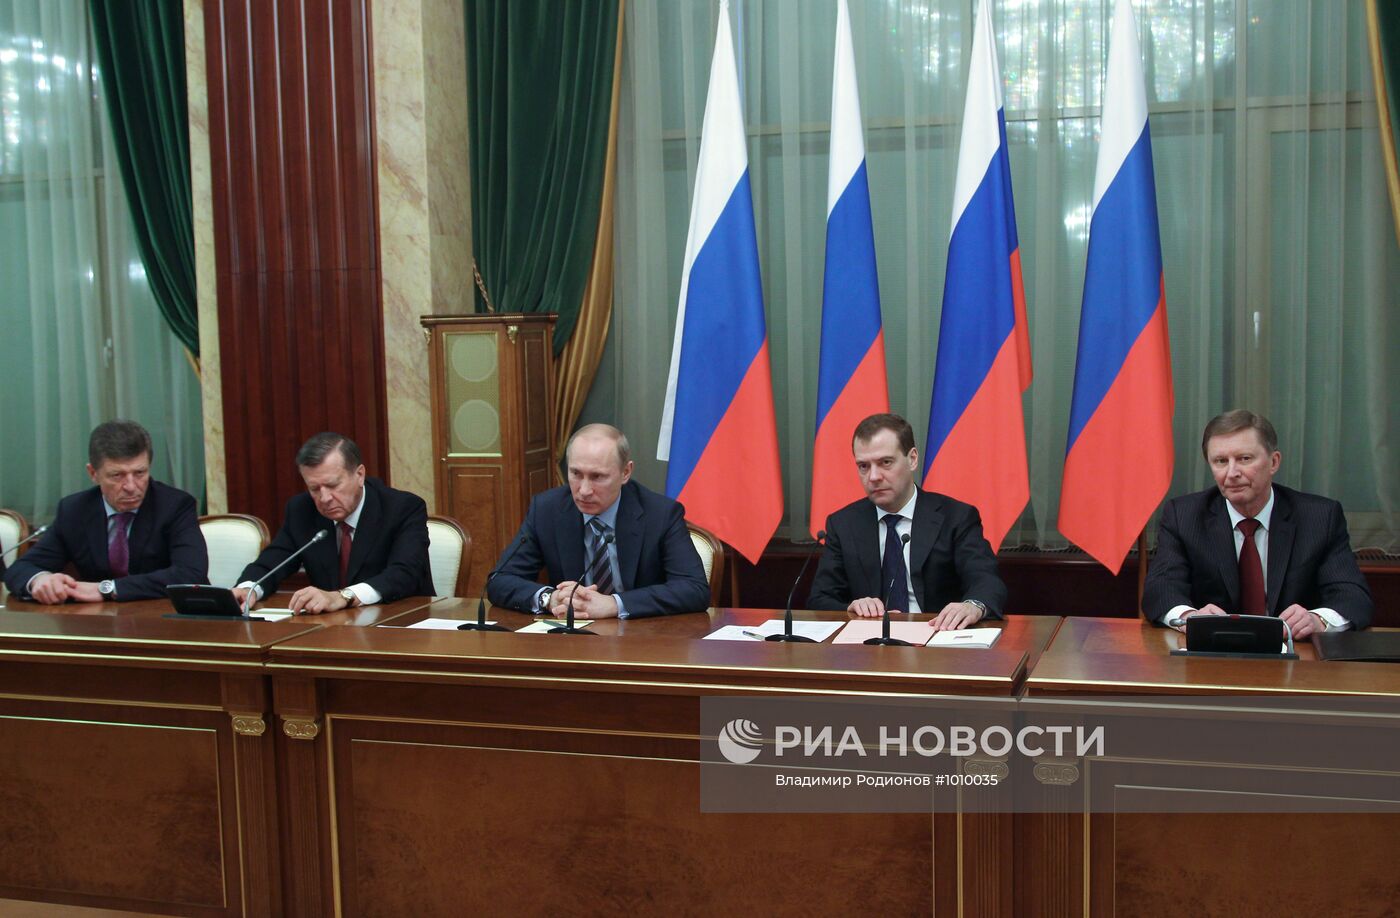 Д.Медведев принимает участие в заседании правительства РФ